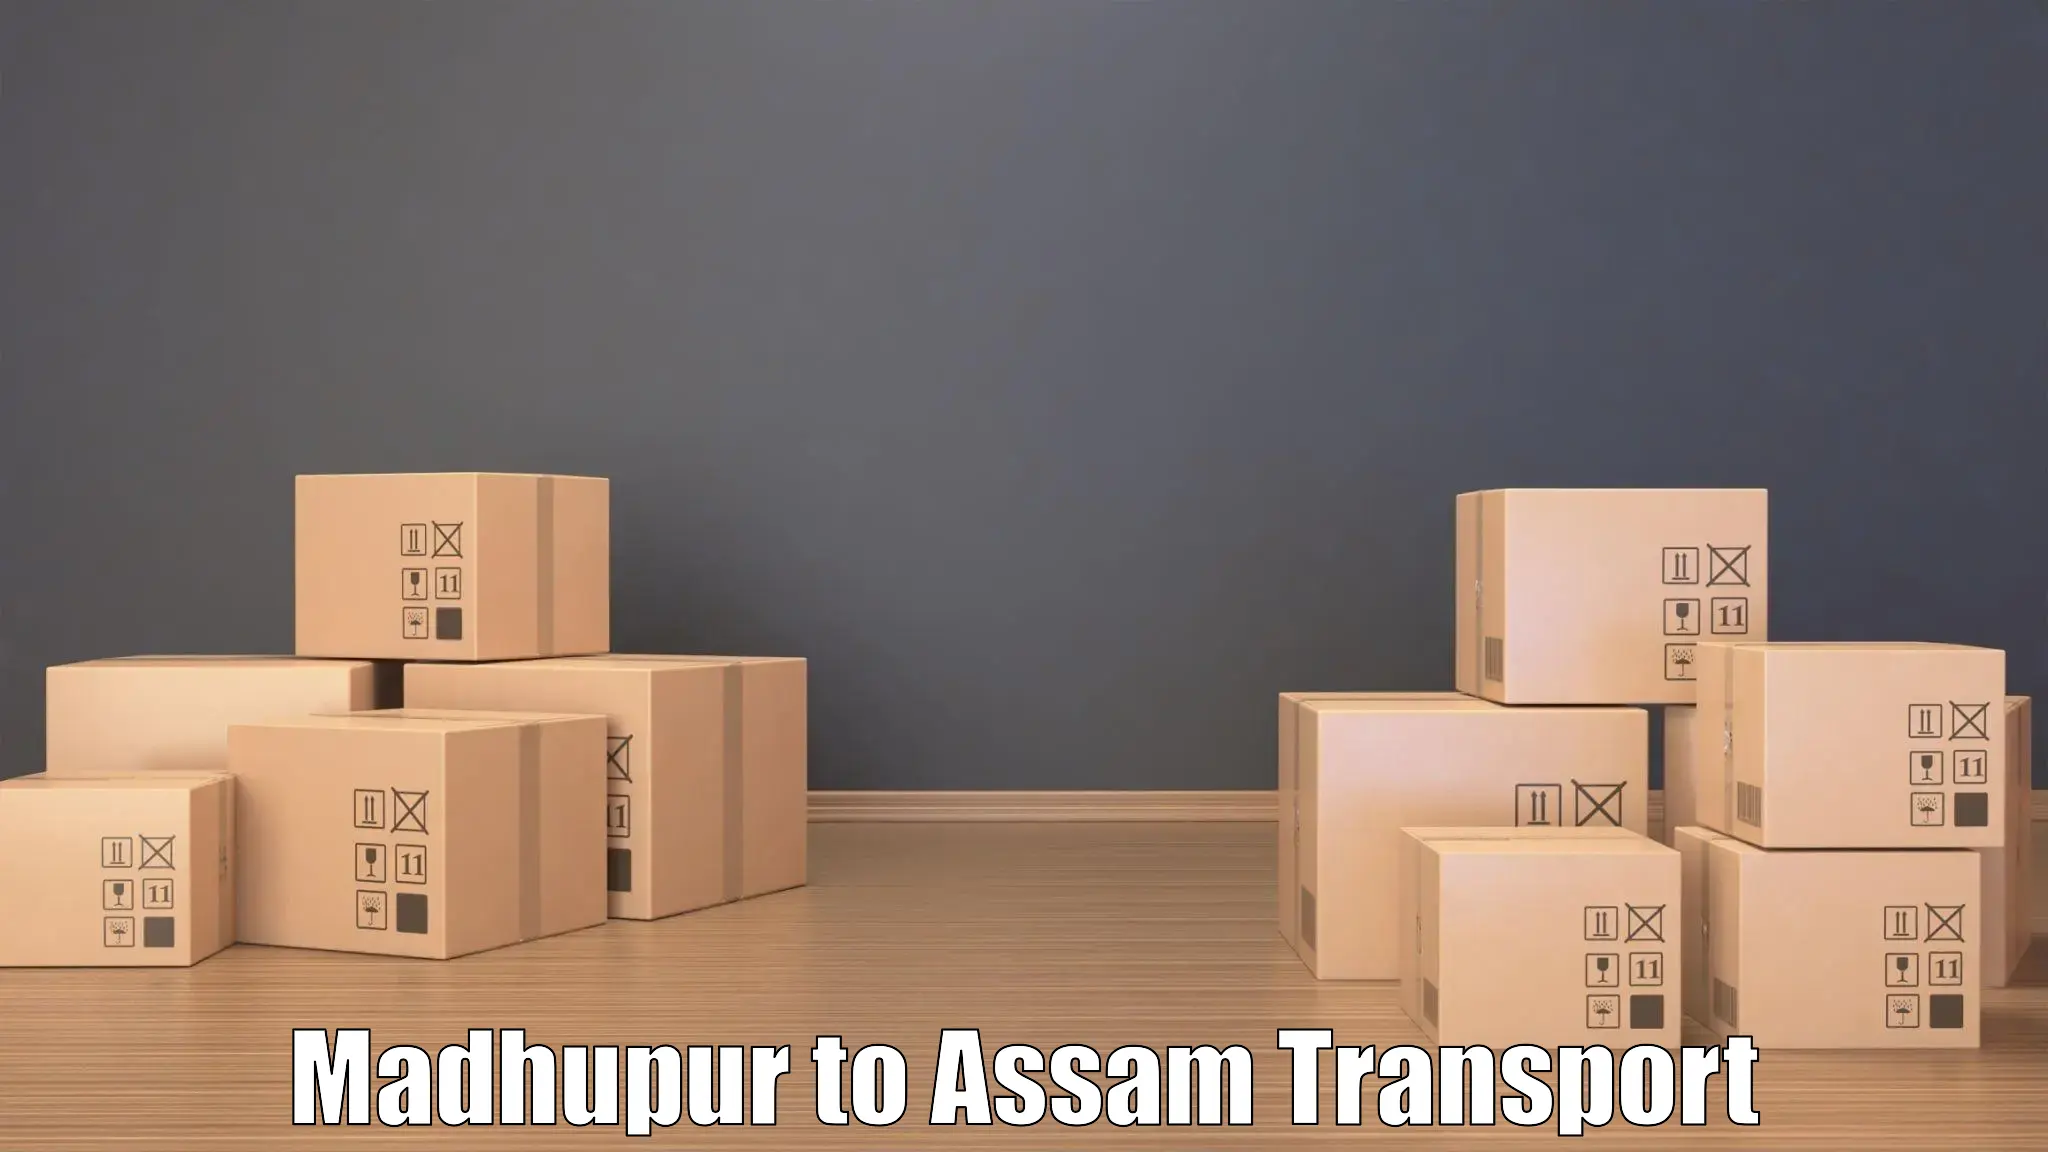 Online transport booking Madhupur to Dhekiajuli